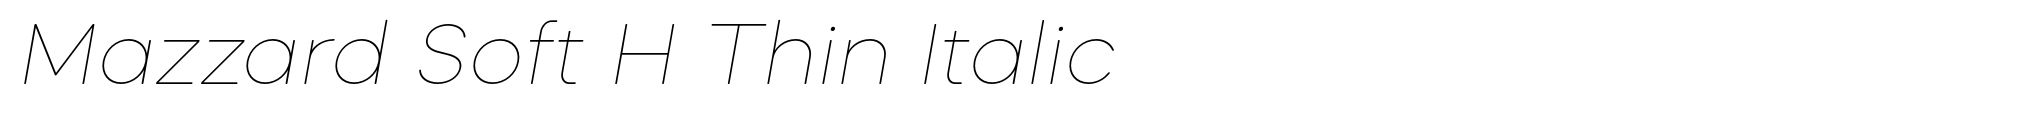 Mazzard Soft H Thin Italic image